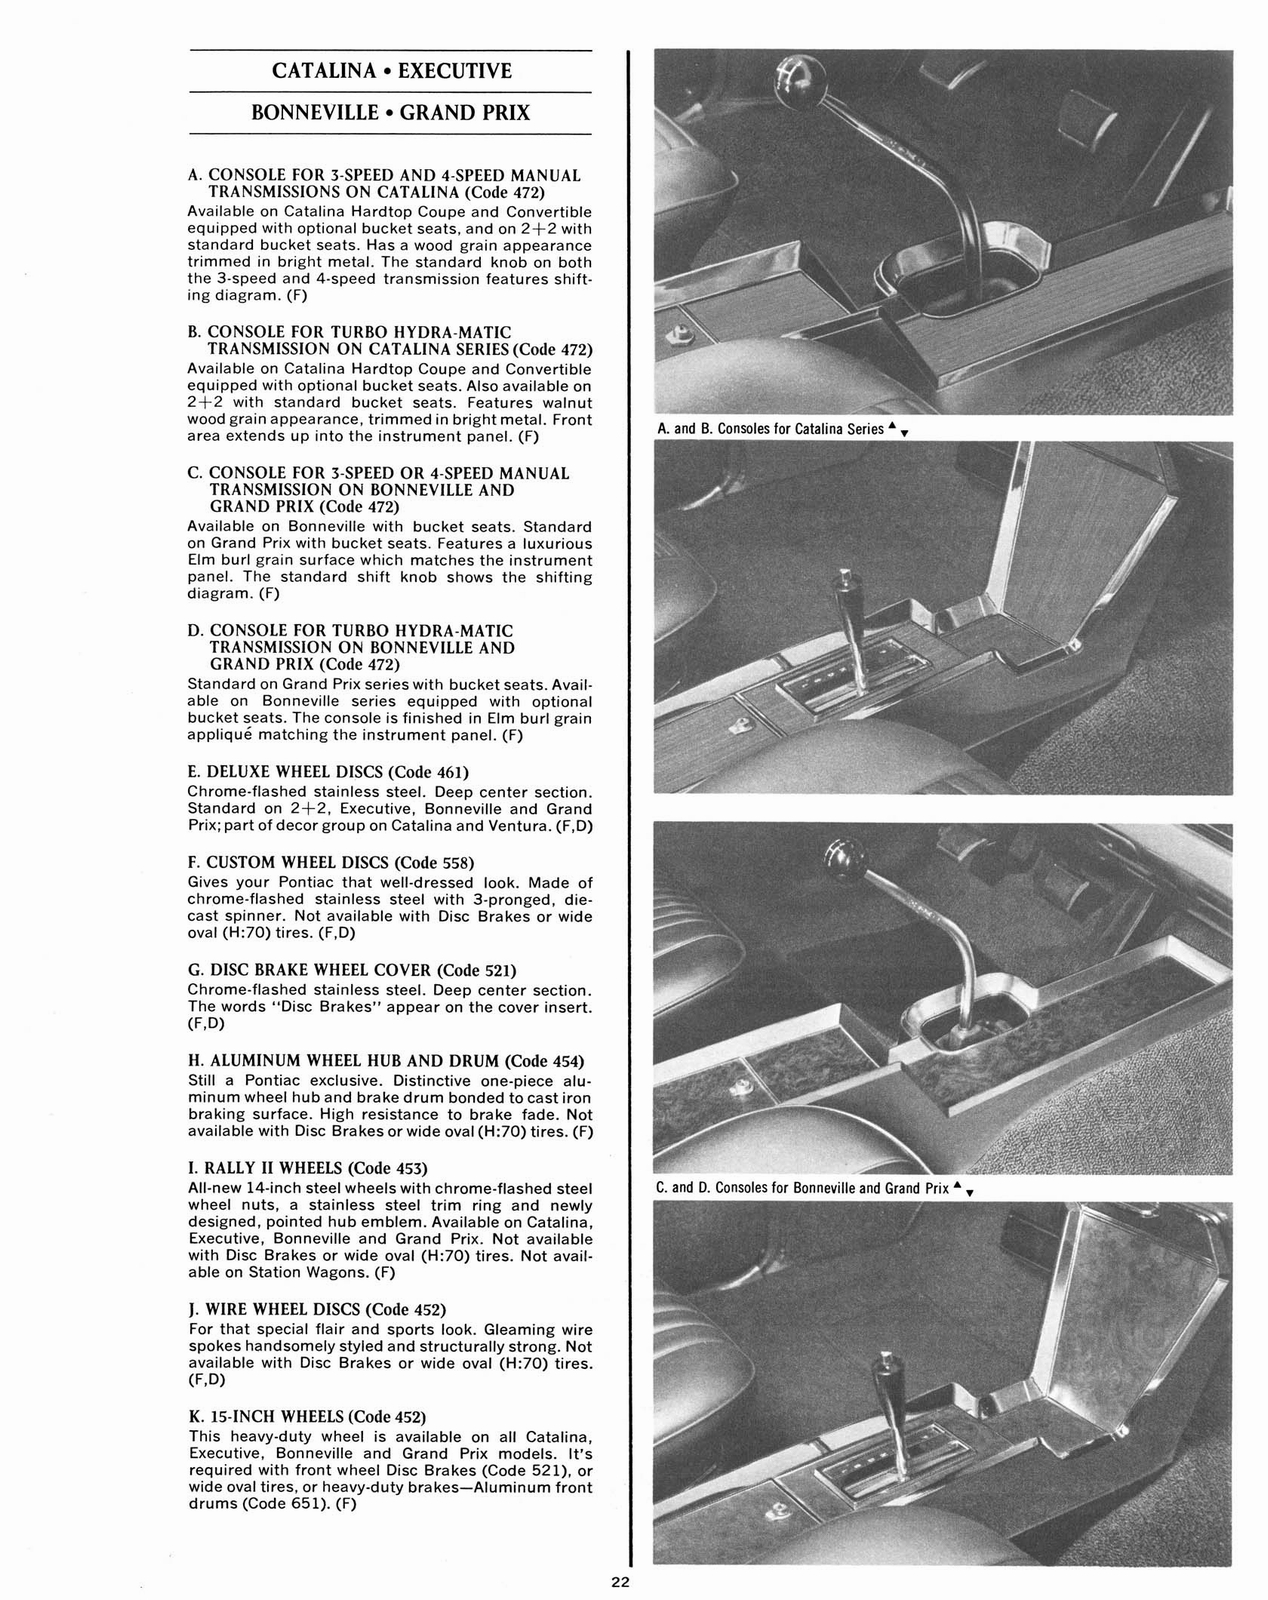 n_1967 Pontiac Accessories-22.jpg